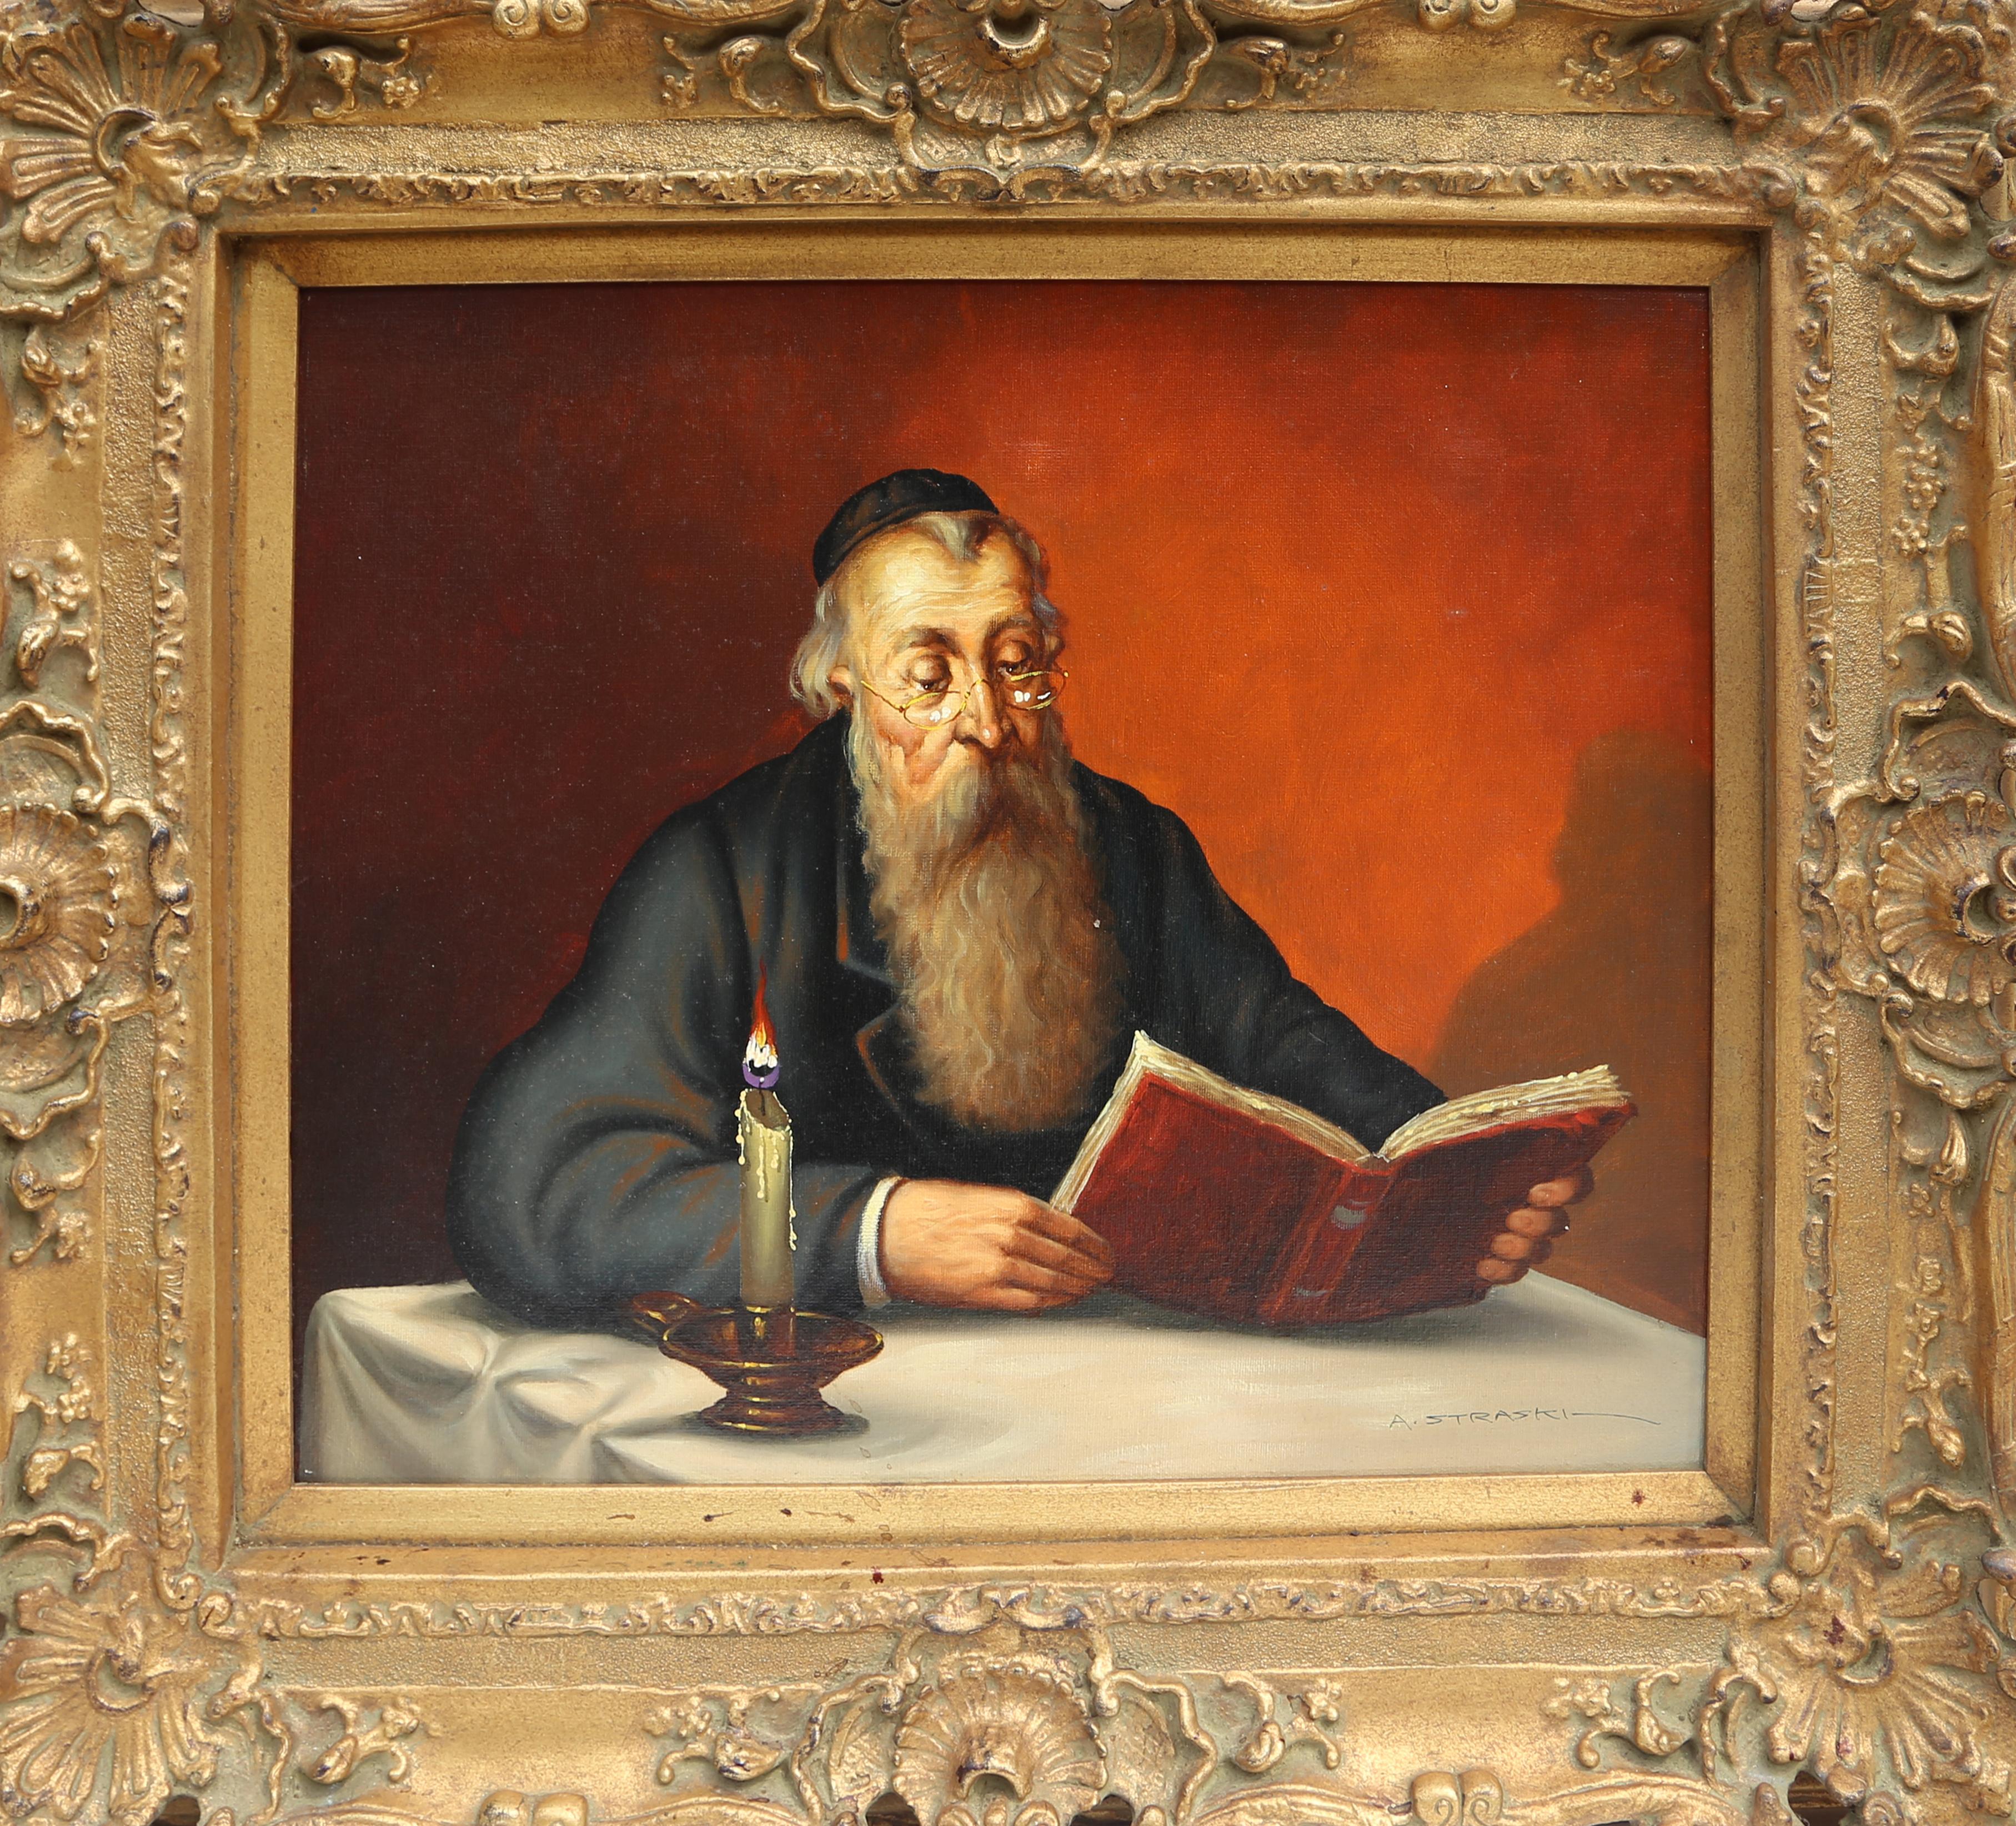 Lecture rabbinique à la bougie (9-F)
Abraham Straski, polonais (1903-1987)
Date : 1959
Huile sur toile, signée et datée
Taille : 50,8 x 58,42 cm (20 x 23 in.)
Taille du cadre : 31 x 34 pouces